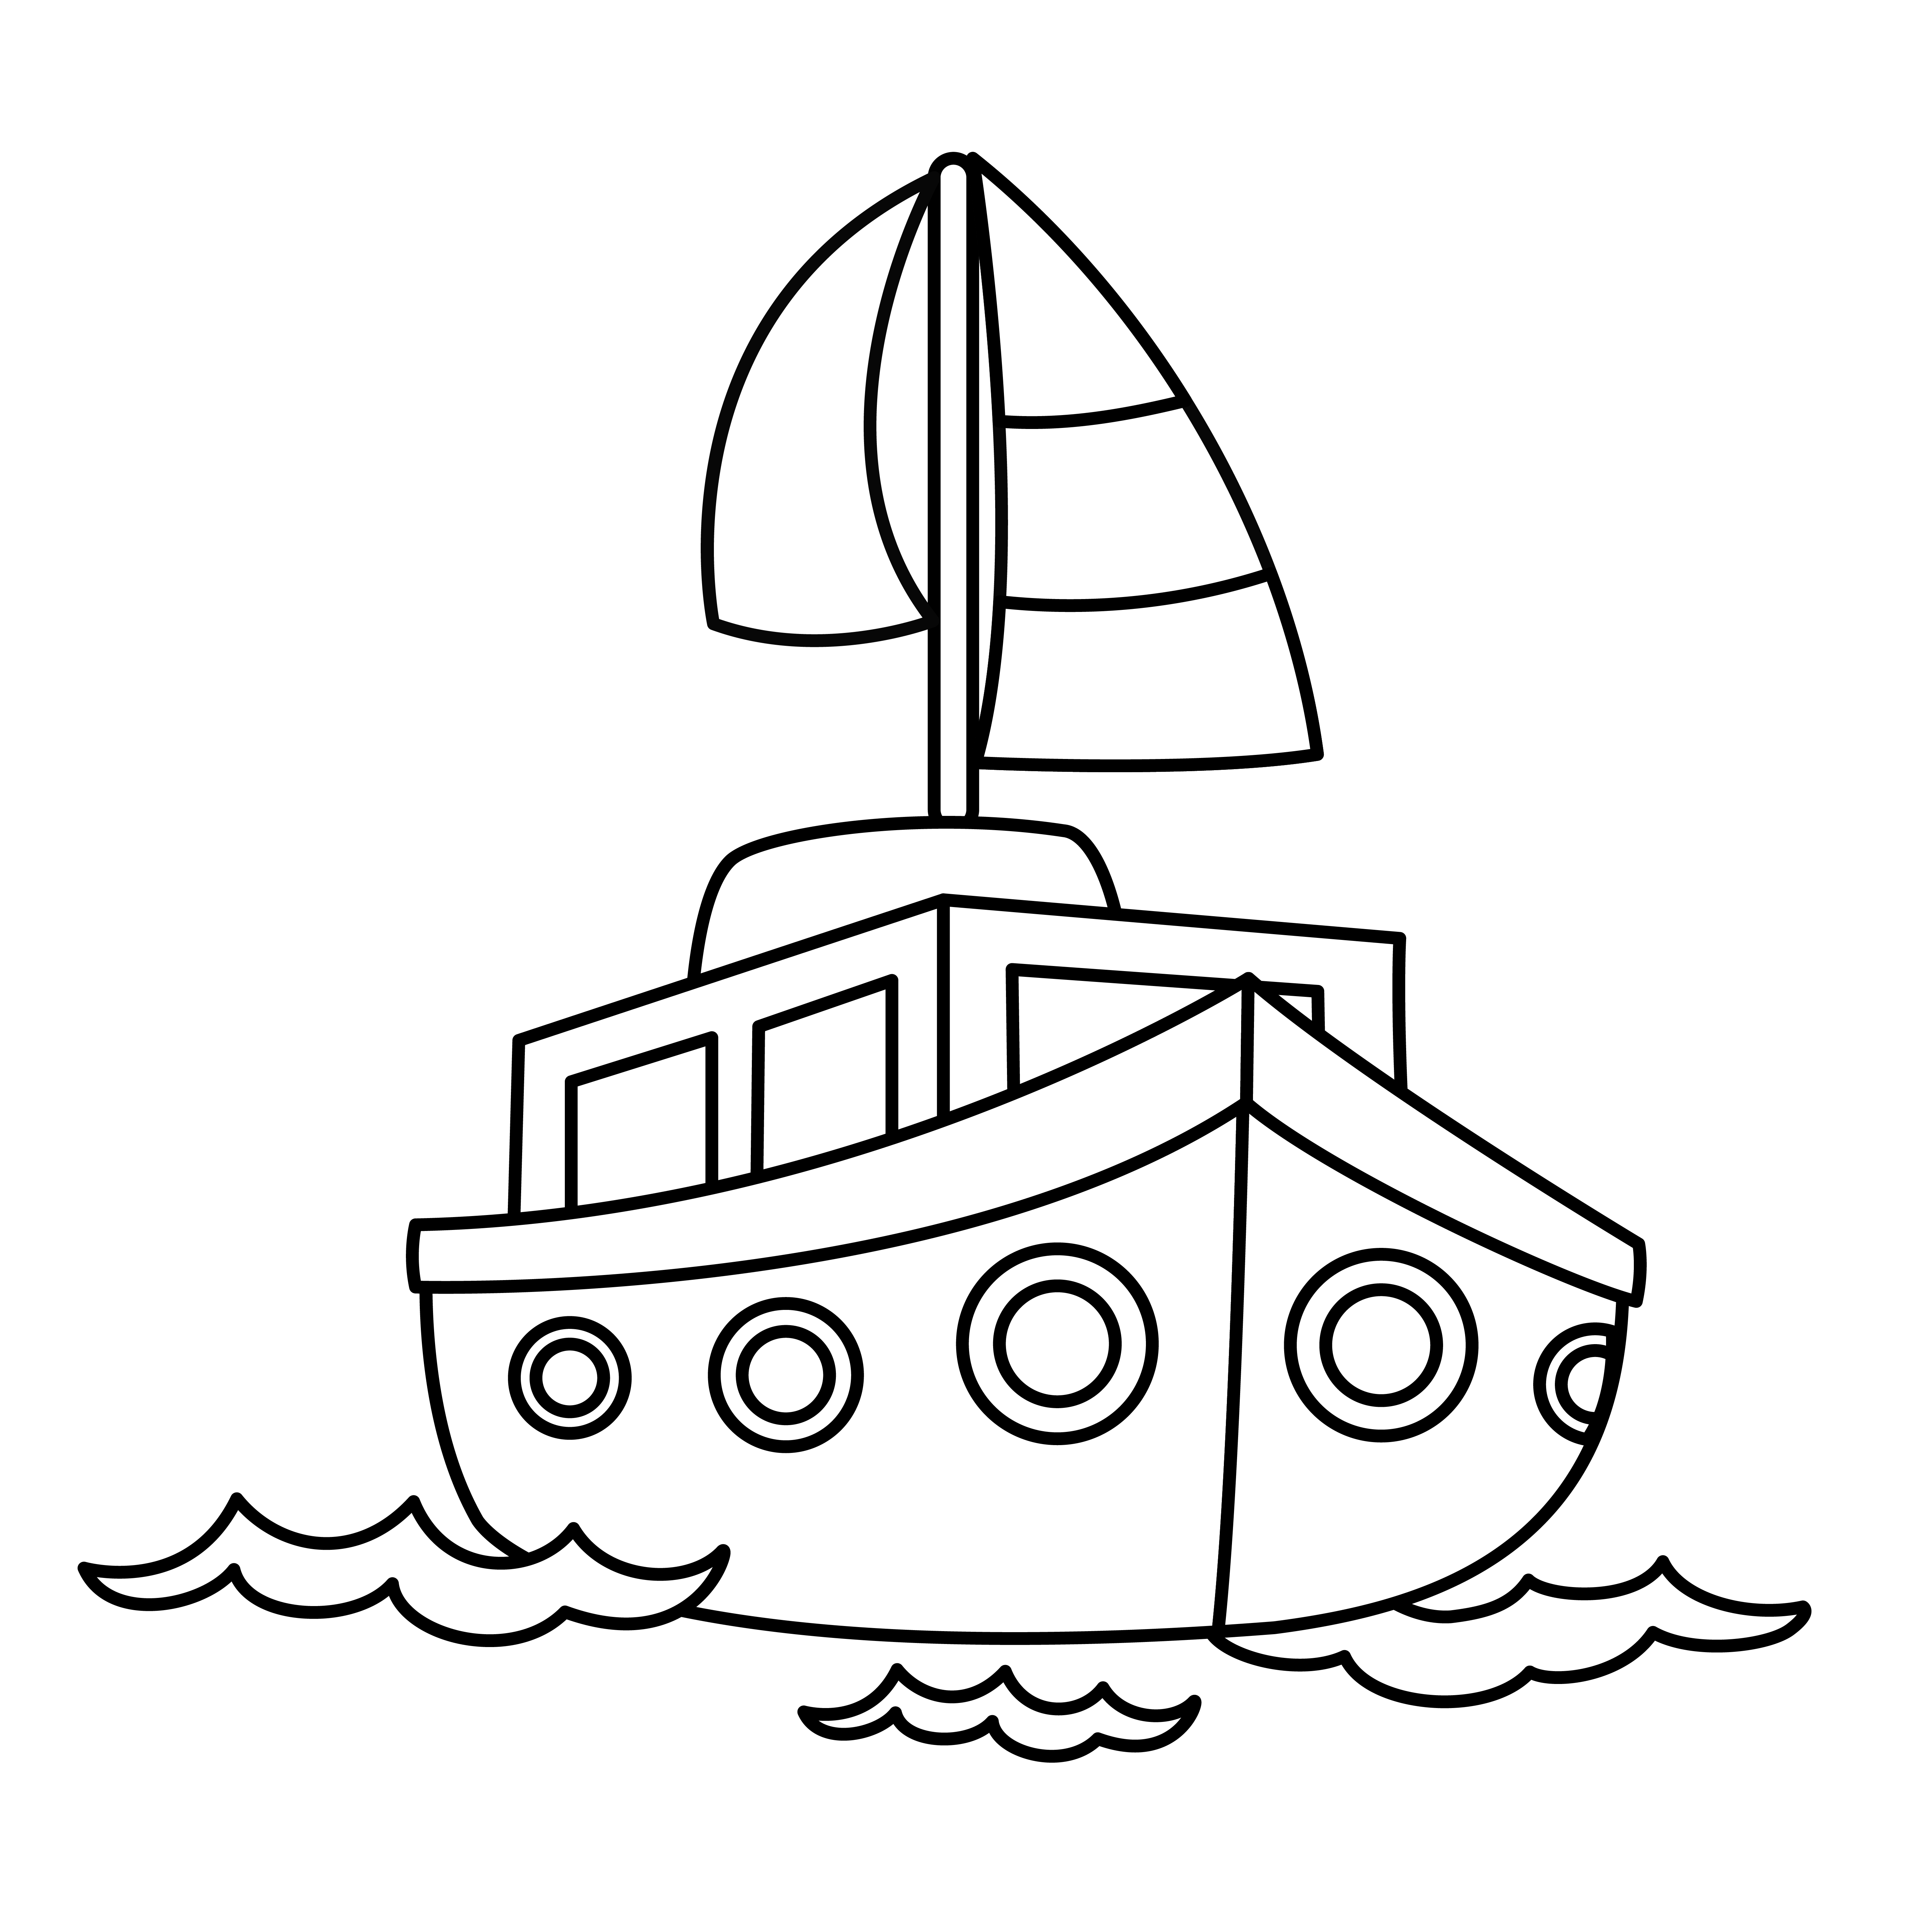 Раскраска иллюстрация маленького корабля формата А4 в высоком качестве